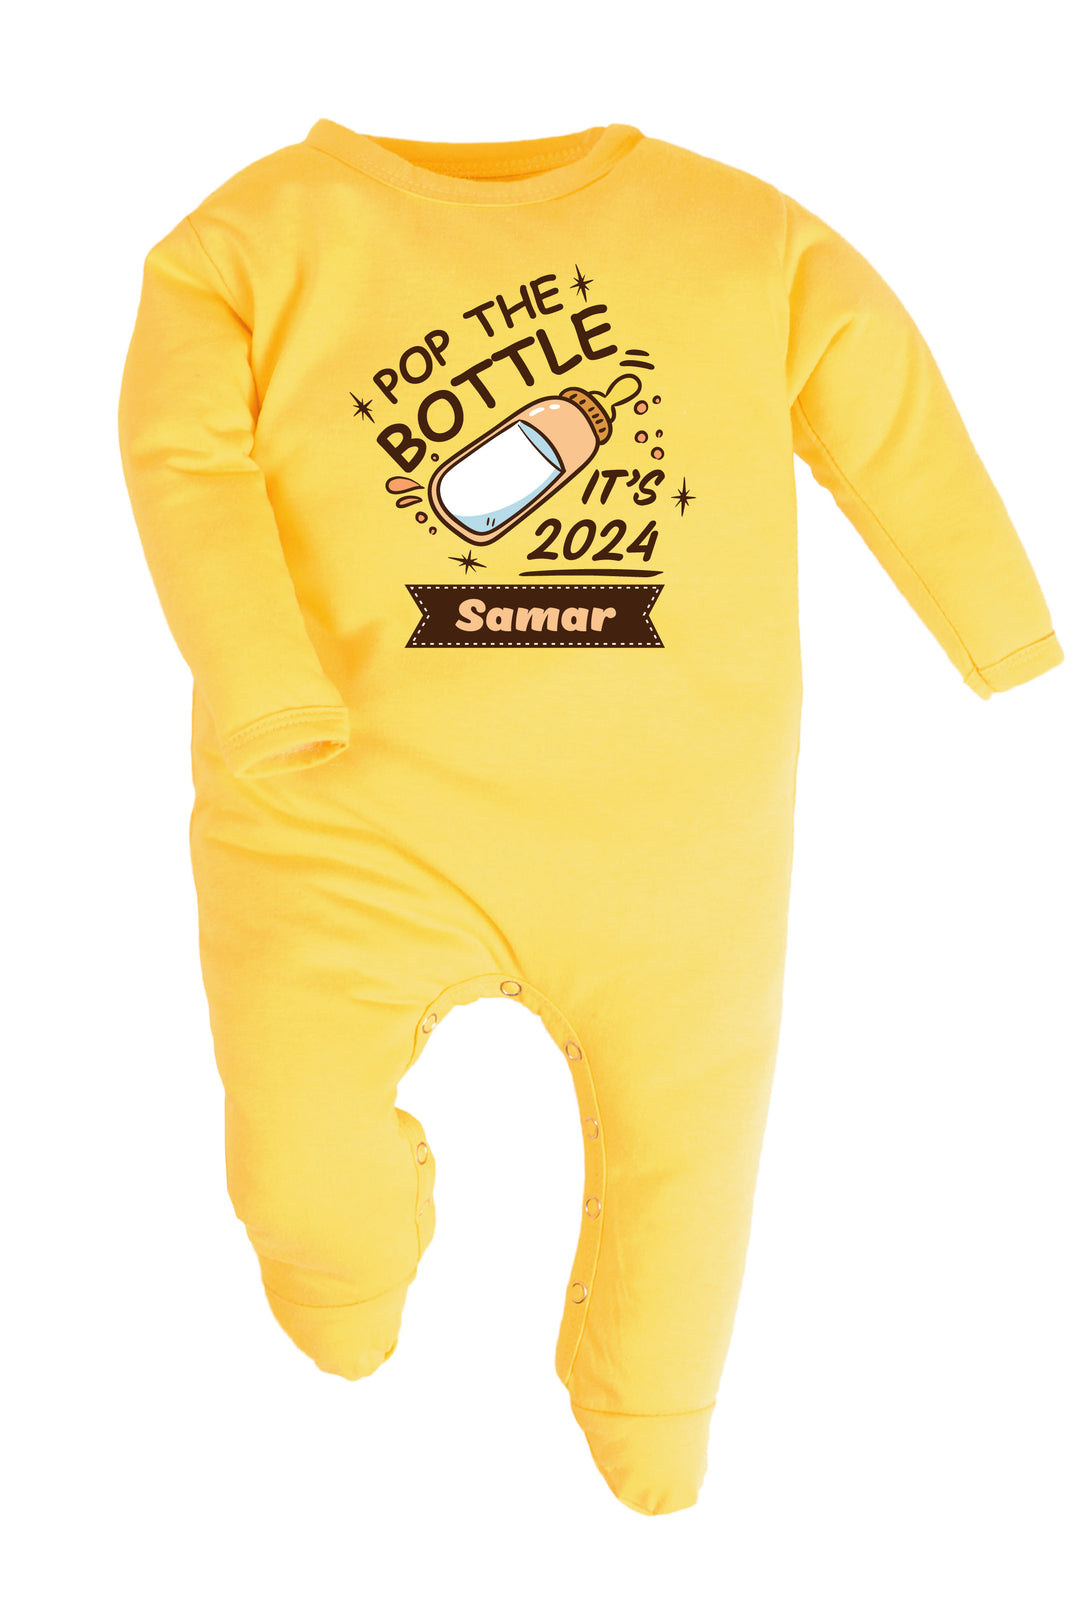 Pop The Bottles It Is 2024 Baby Romper | Onesies w/ Custom Name